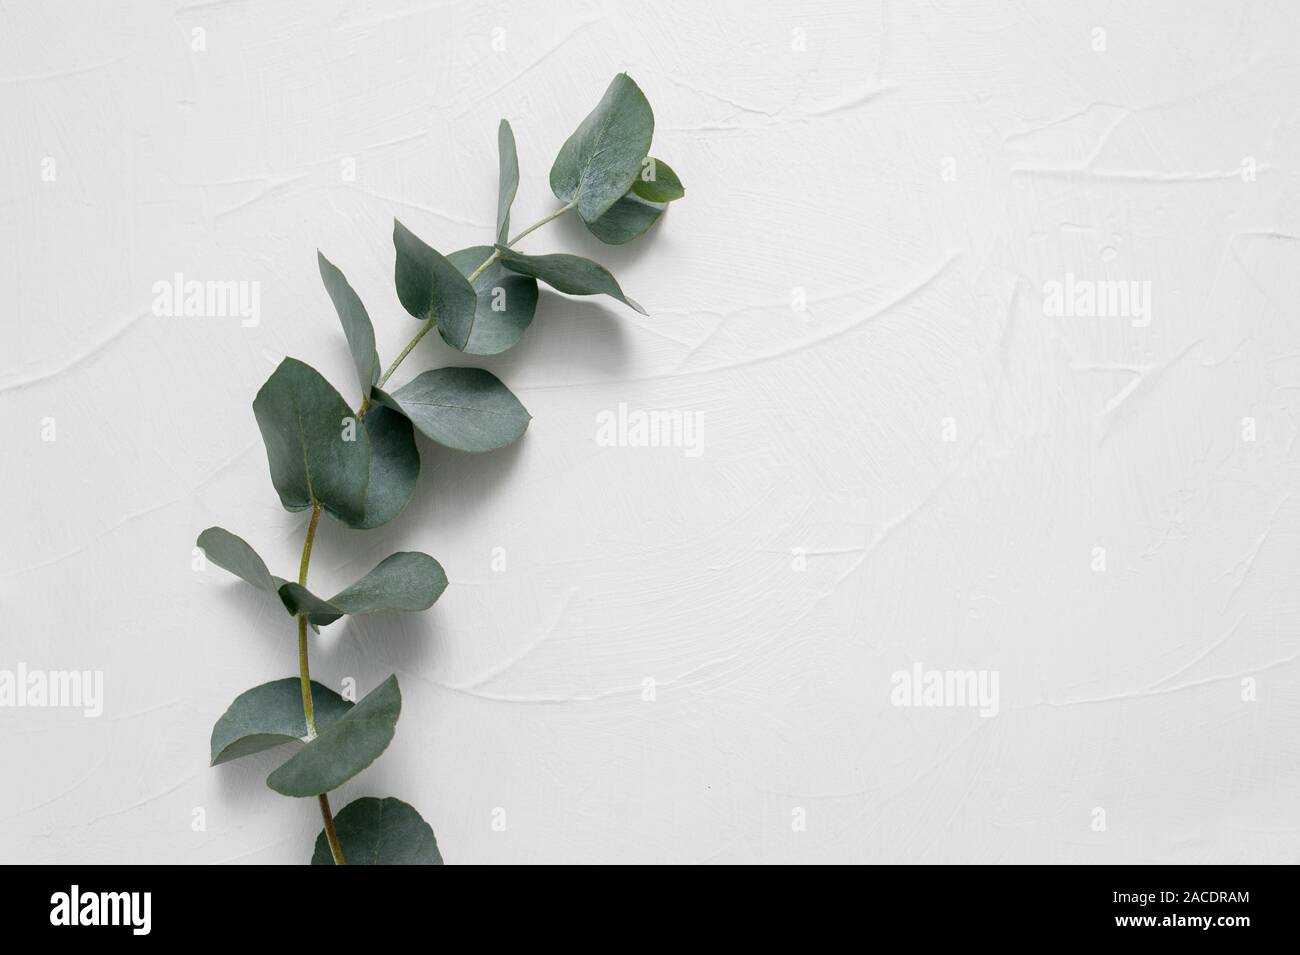 Des feuilles d'Eucalyptus cadre sur fond blanc avec place pour votre texte. Couronne faite de la direction générale de la feuille. Mise à plat, vue du dessus Banque D'Images